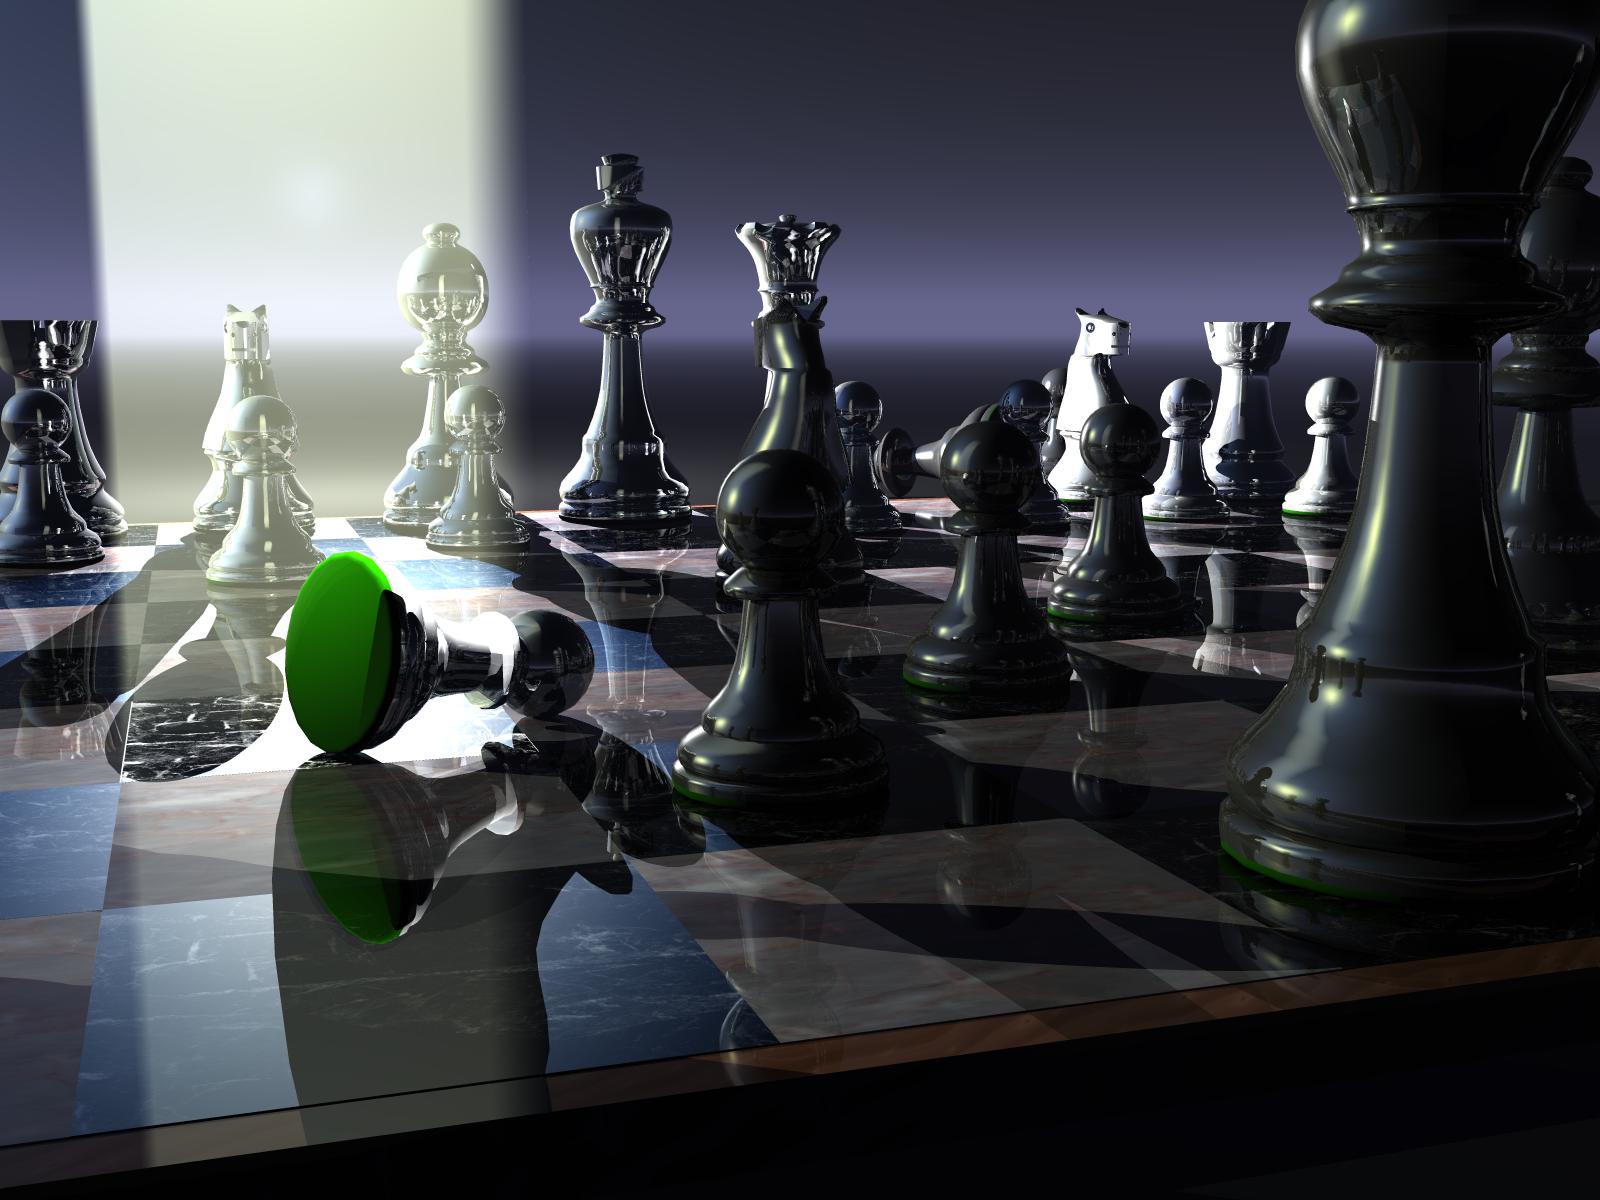 http://3.bp.blogspot.com/-fyDp1D2qz1w/T9ZLp30rIYI/AAAAAAAAAao/7oYYZPIuwiM/s1600/Chess.jpg